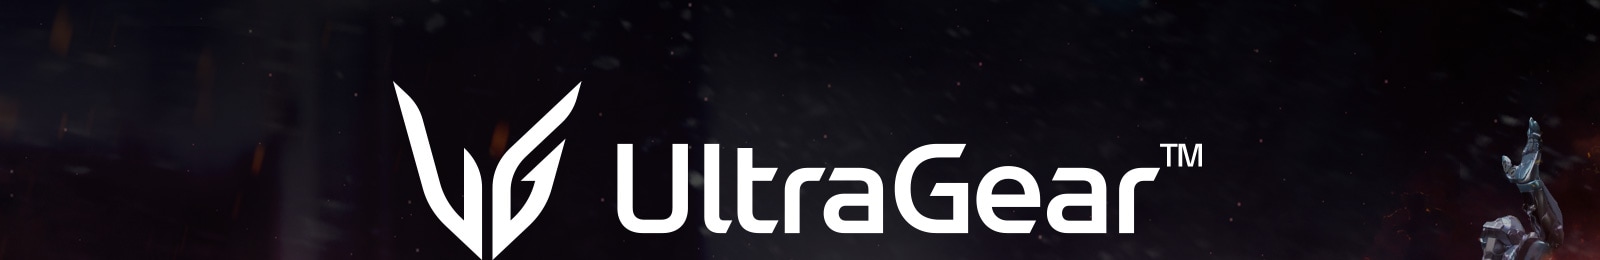 Игровой монитор UltraGear™